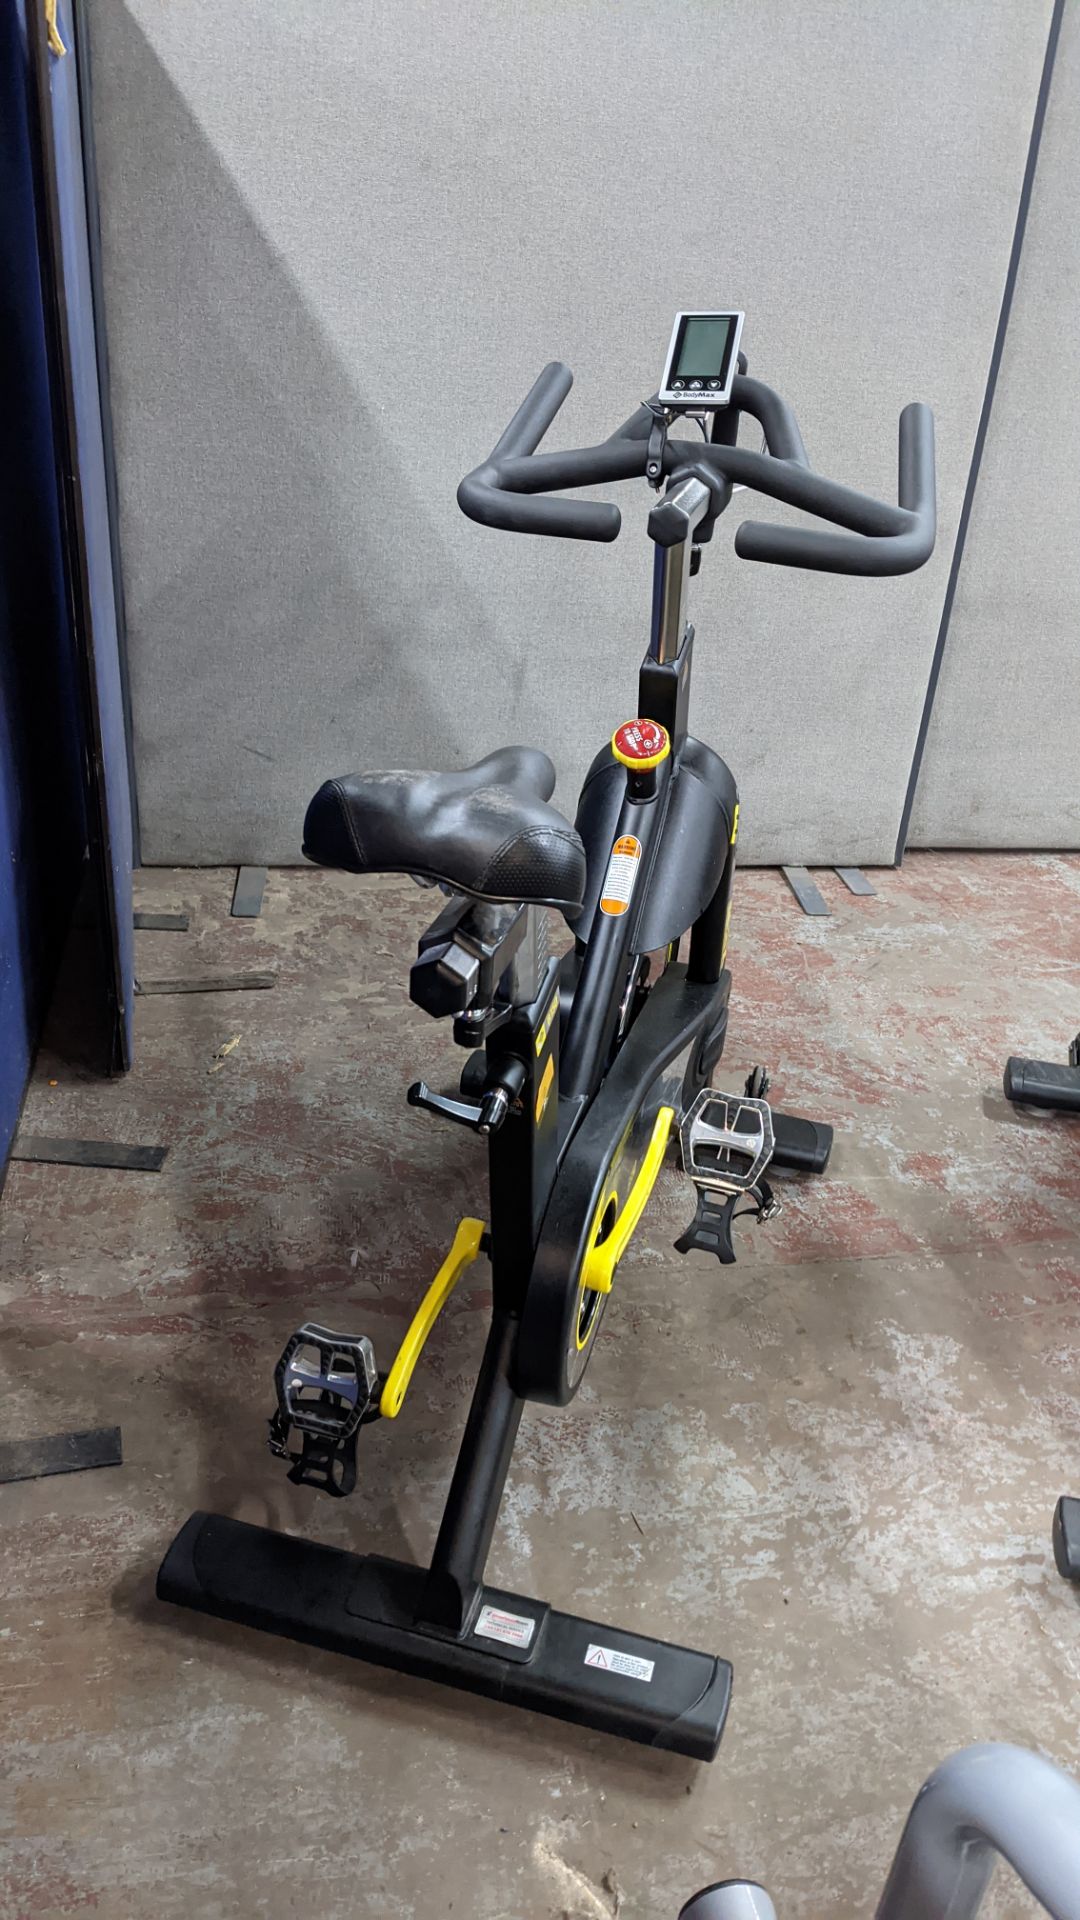 BodyMax model B150 indoor exercise bike. - Image 11 of 11